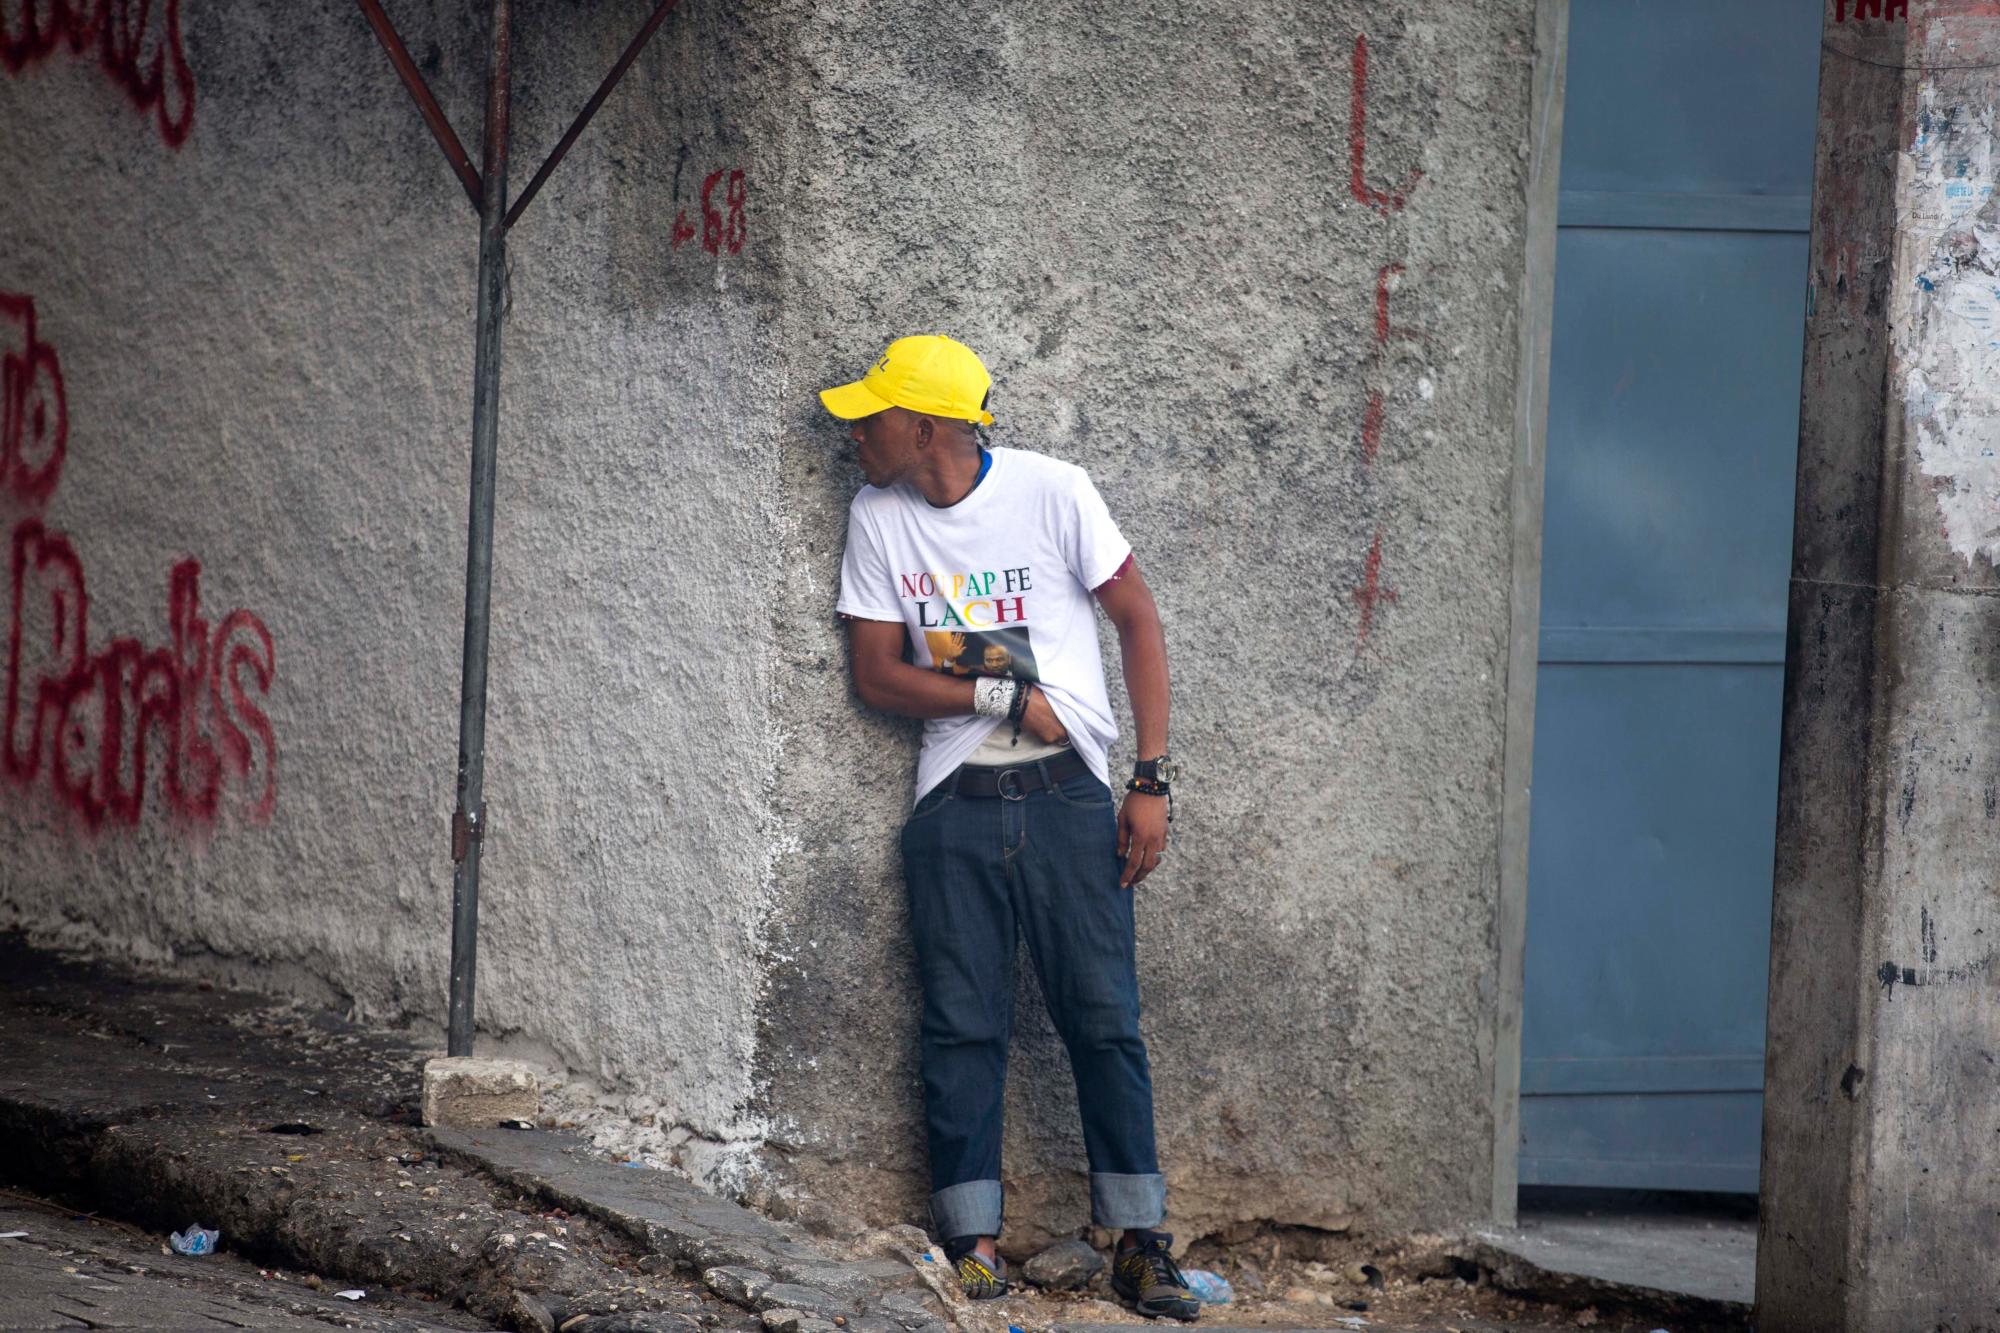 Un hombre se refugia detrás de una pared de la esquina cuando llega a su banda de desecho por un arma oculta durante una protesta para exigir la renuncia del presidente de Haití, Jovenel Moise, en el 216 aniversario de la Batalla de Vertieres en Puerto Príncipe, Haití, lunes, noviembre. 18 de enero de 2019. Al menos cuatro personas fueron baleadas y heridas durante una pequeña protesta en la capital de Haití después de un discurso del presidente Moise. Un periodista local, un oficial de policía y dos manifestantes fueron trasladados rápidamente con heridas de bala aparentes. 